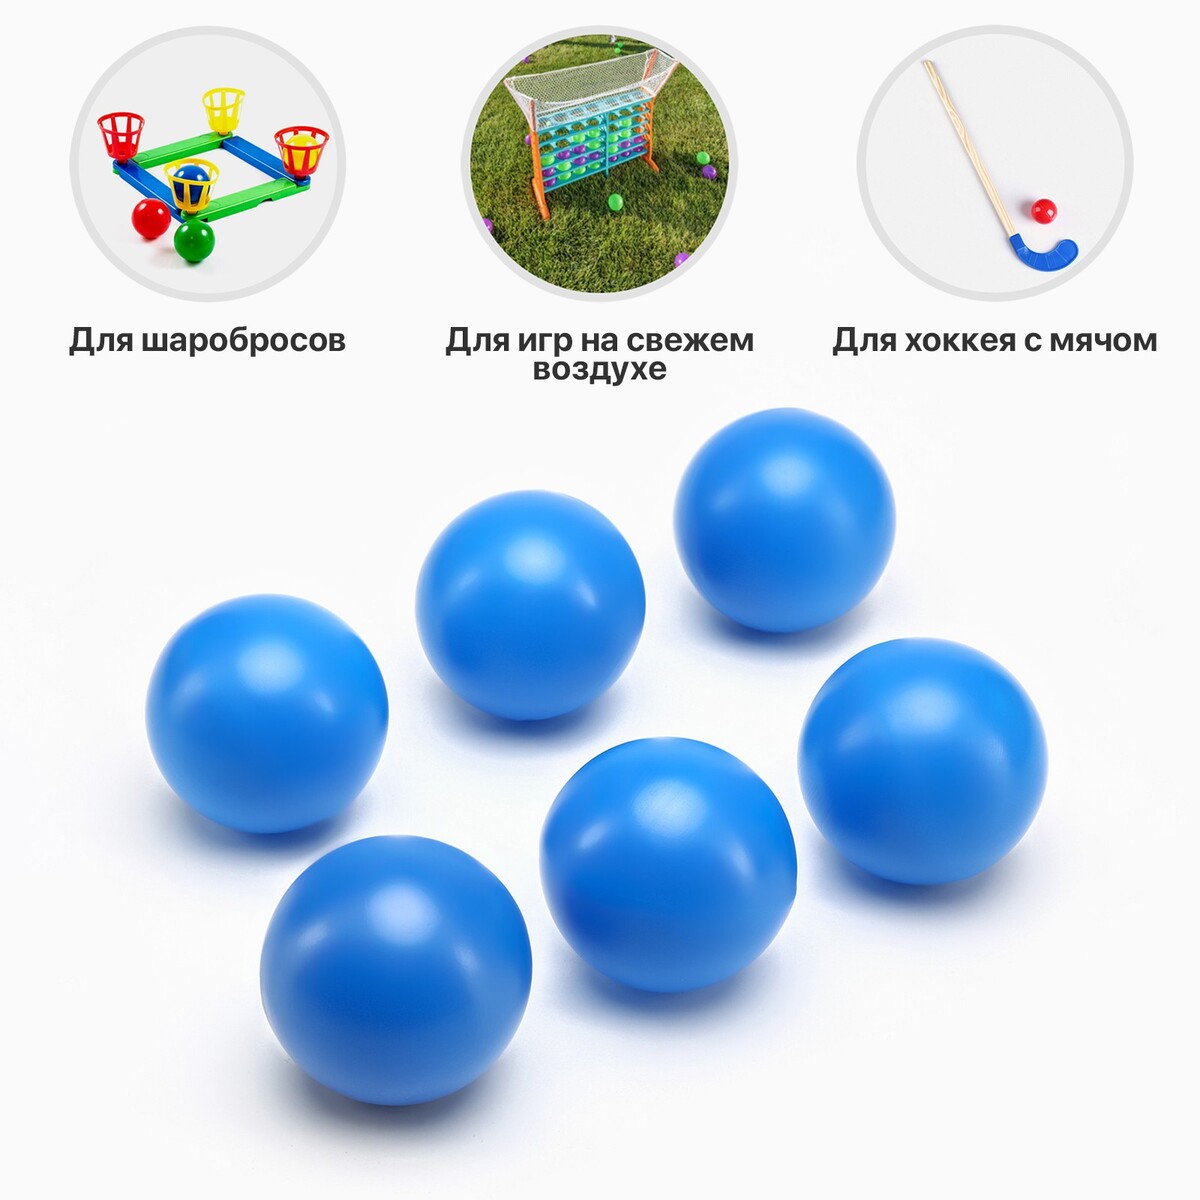 Набор мячей для садовых игр, хоккея, 6 шт, d-7 см набор мячей для настольного тенниса boshika d 40 мм 3 звезды 6 шт оранжевый